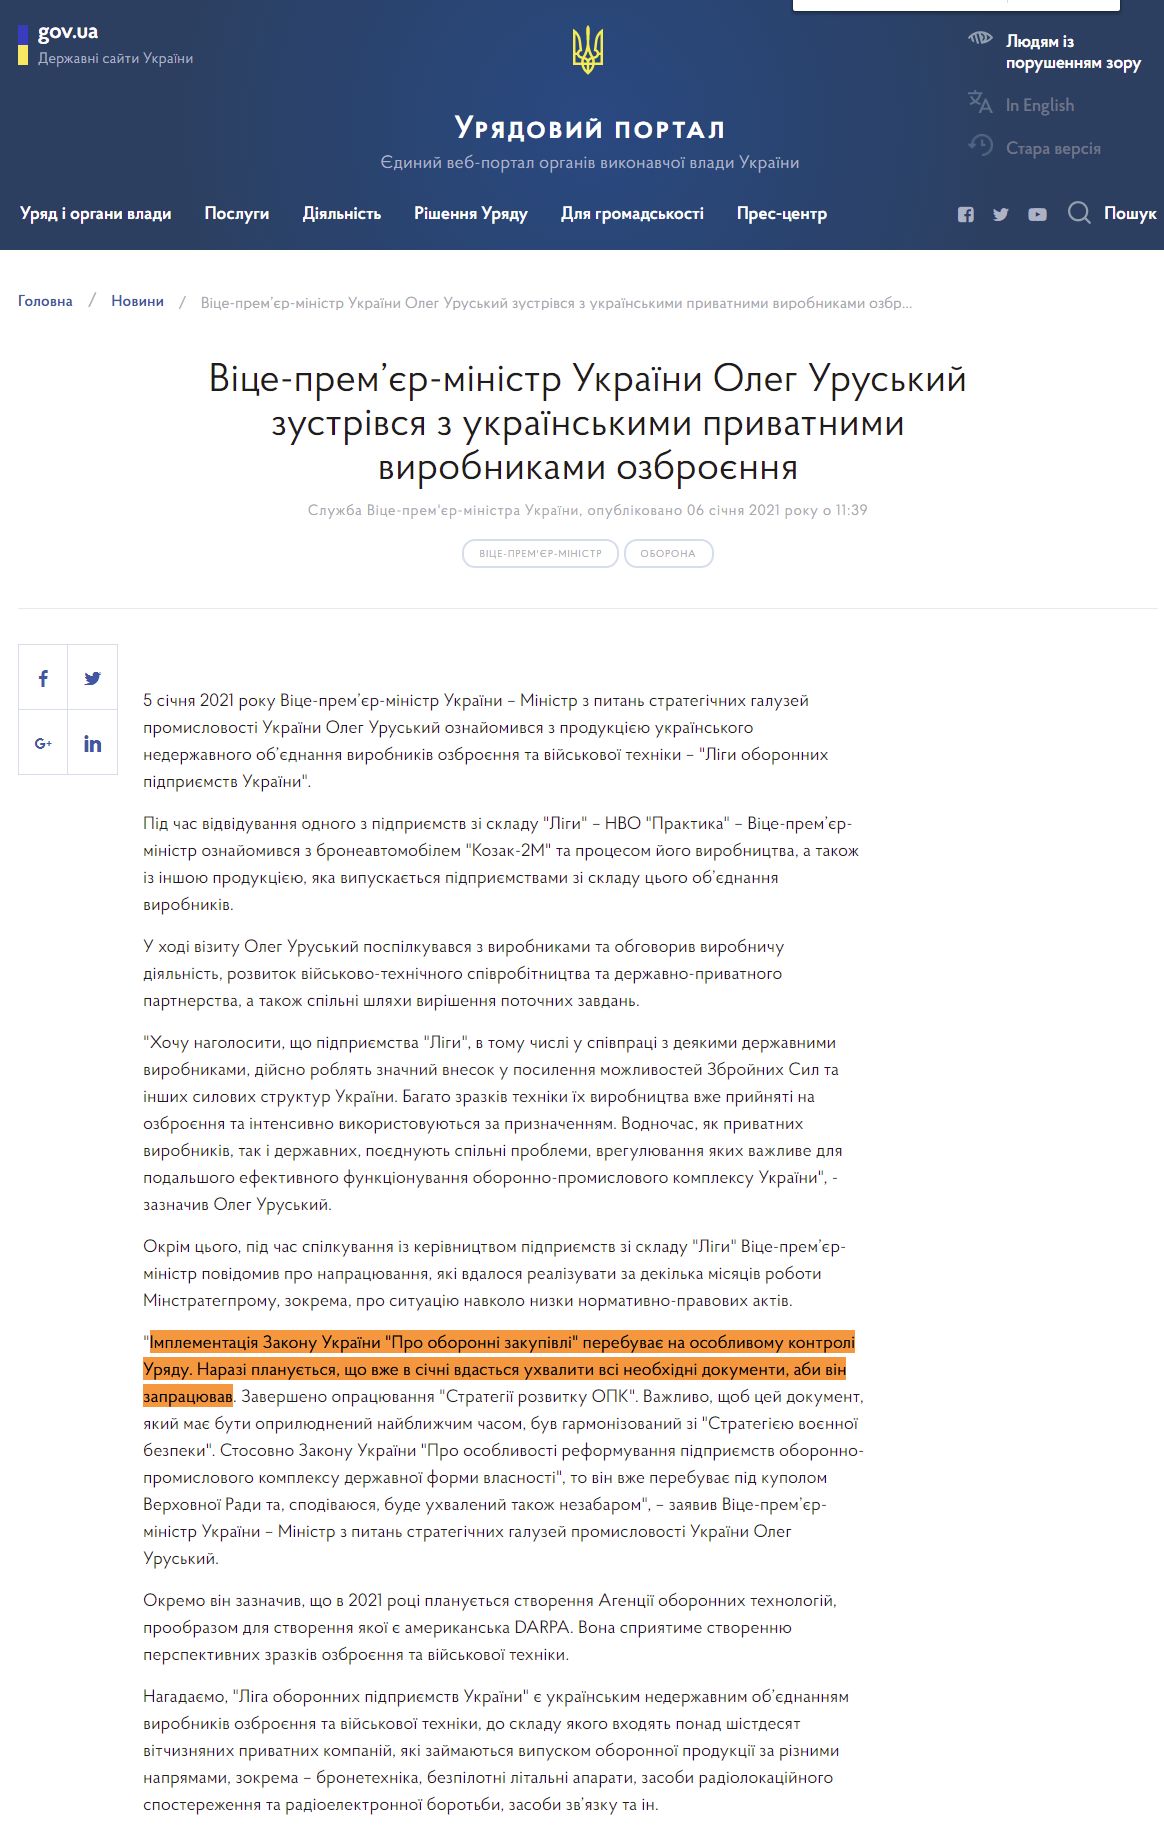 https://www.kmu.gov.ua/news/vice-premyer-ministr-ukrayini-oleg-uruskij-zustrivsya-z-ukrayinskimi-privatnimi-virobnikami-ozbroyennya